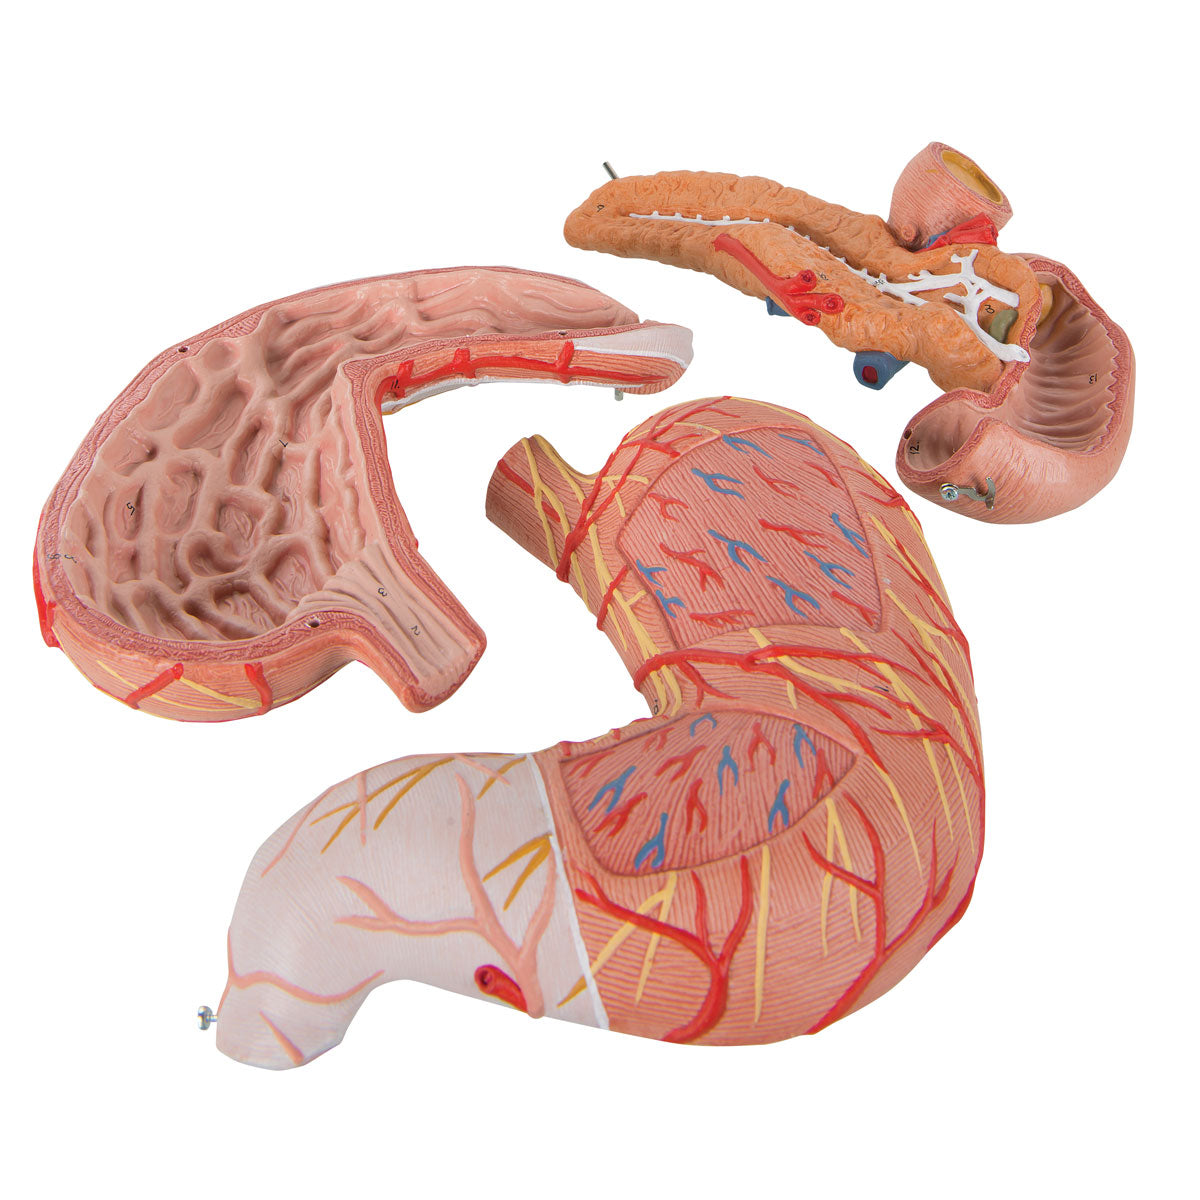 Detaljerad modell av magen, tolvfingertarmen och bukspottkörteln